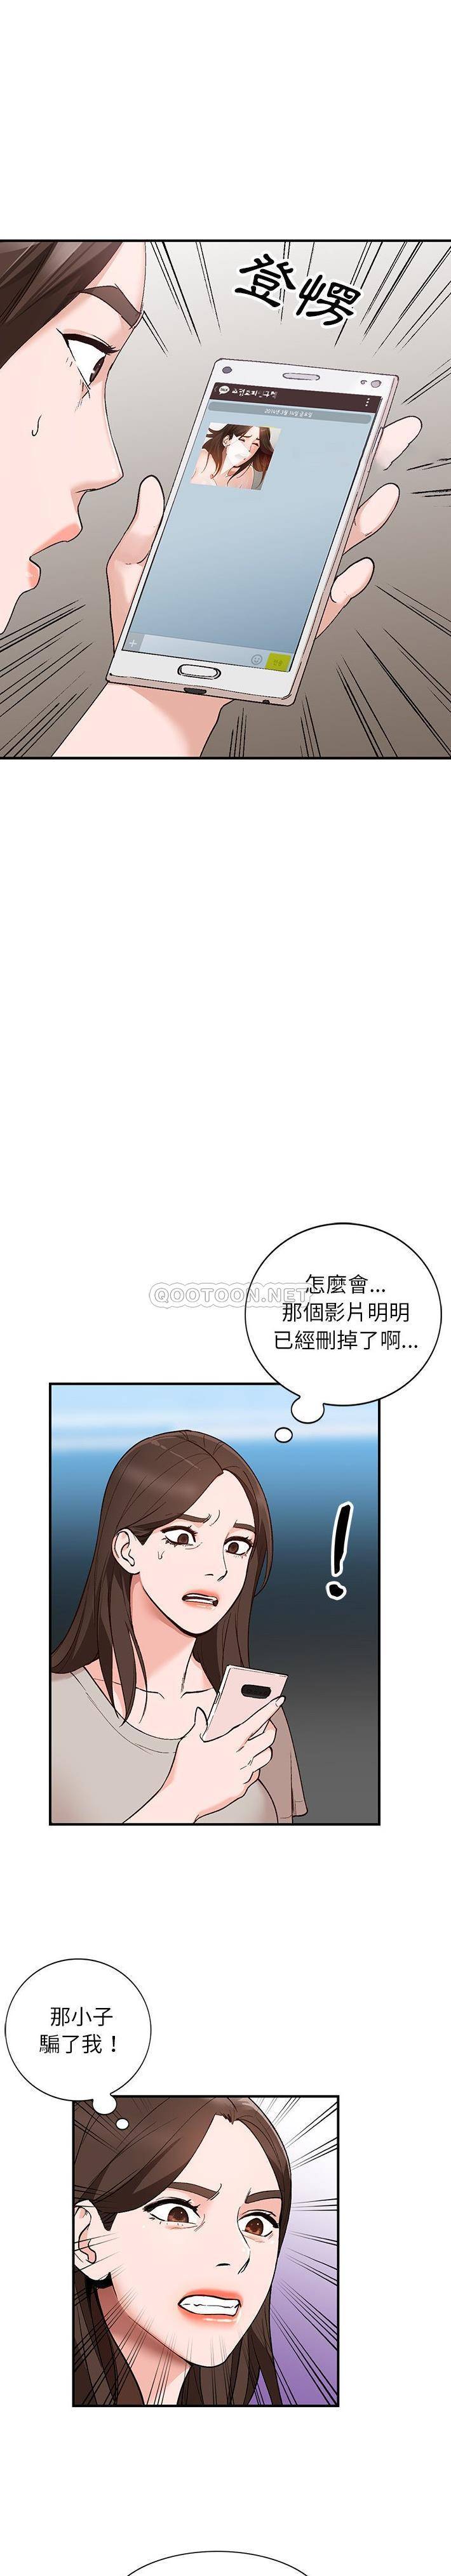 韩国污漫画 她們的小秘密(小鎮上的女人們) 第4话 12